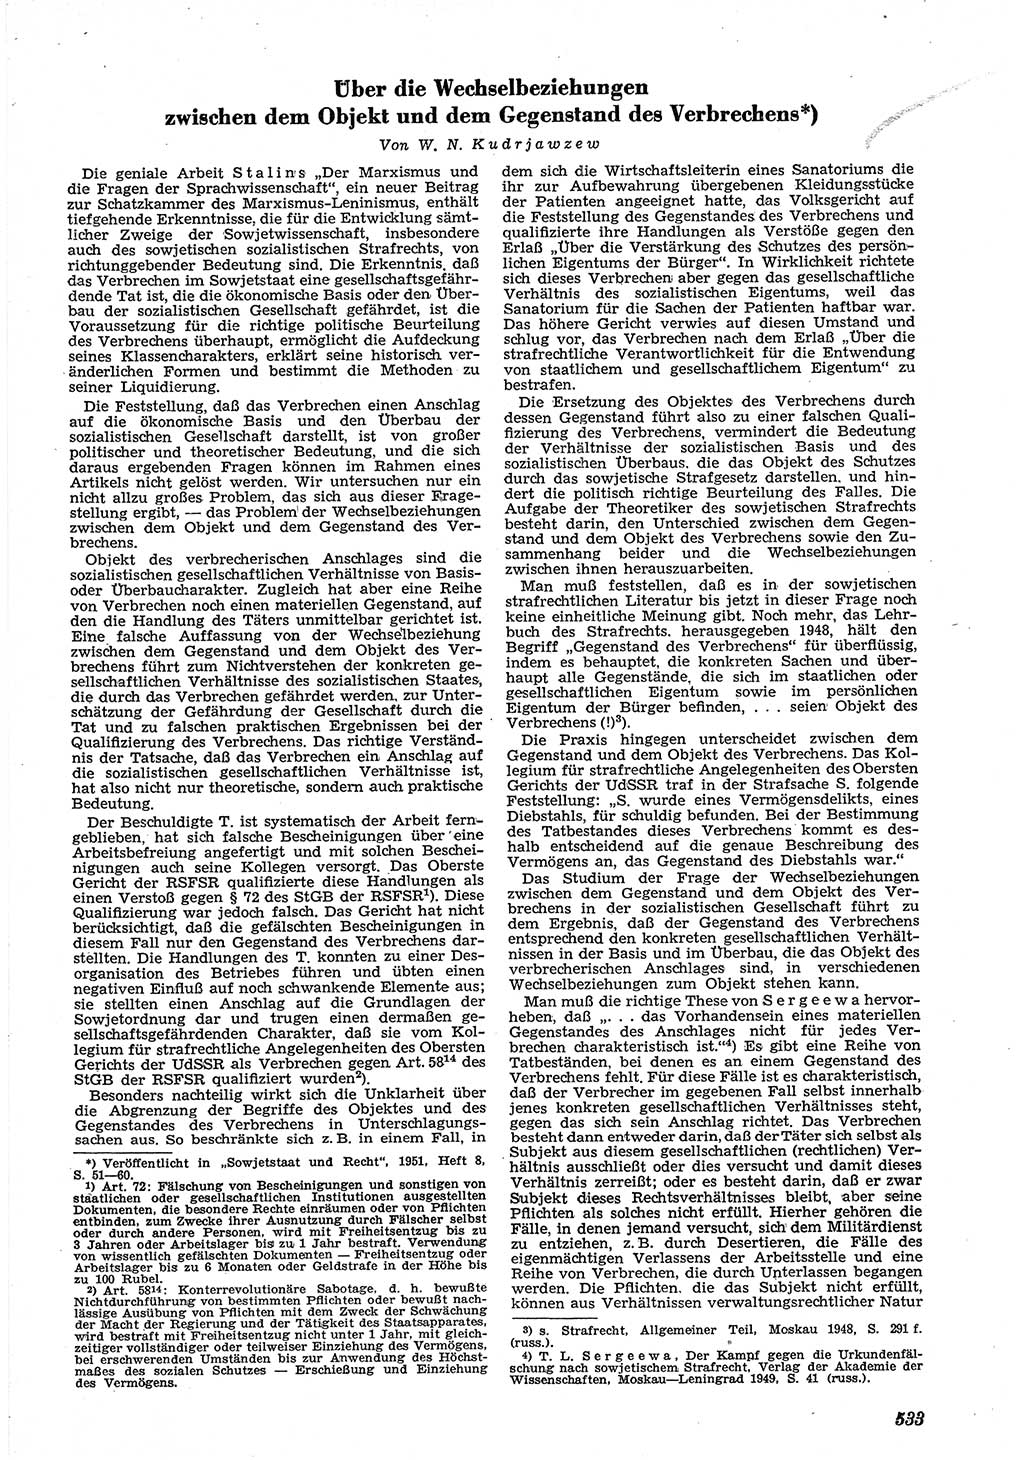 Neue Justiz (NJ), Zeitschrift für Recht und Rechtswissenschaft [Deutsche Demokratische Republik (DDR)], 5. Jahrgang 1951, Seite 533 (NJ DDR 1951, S. 533)